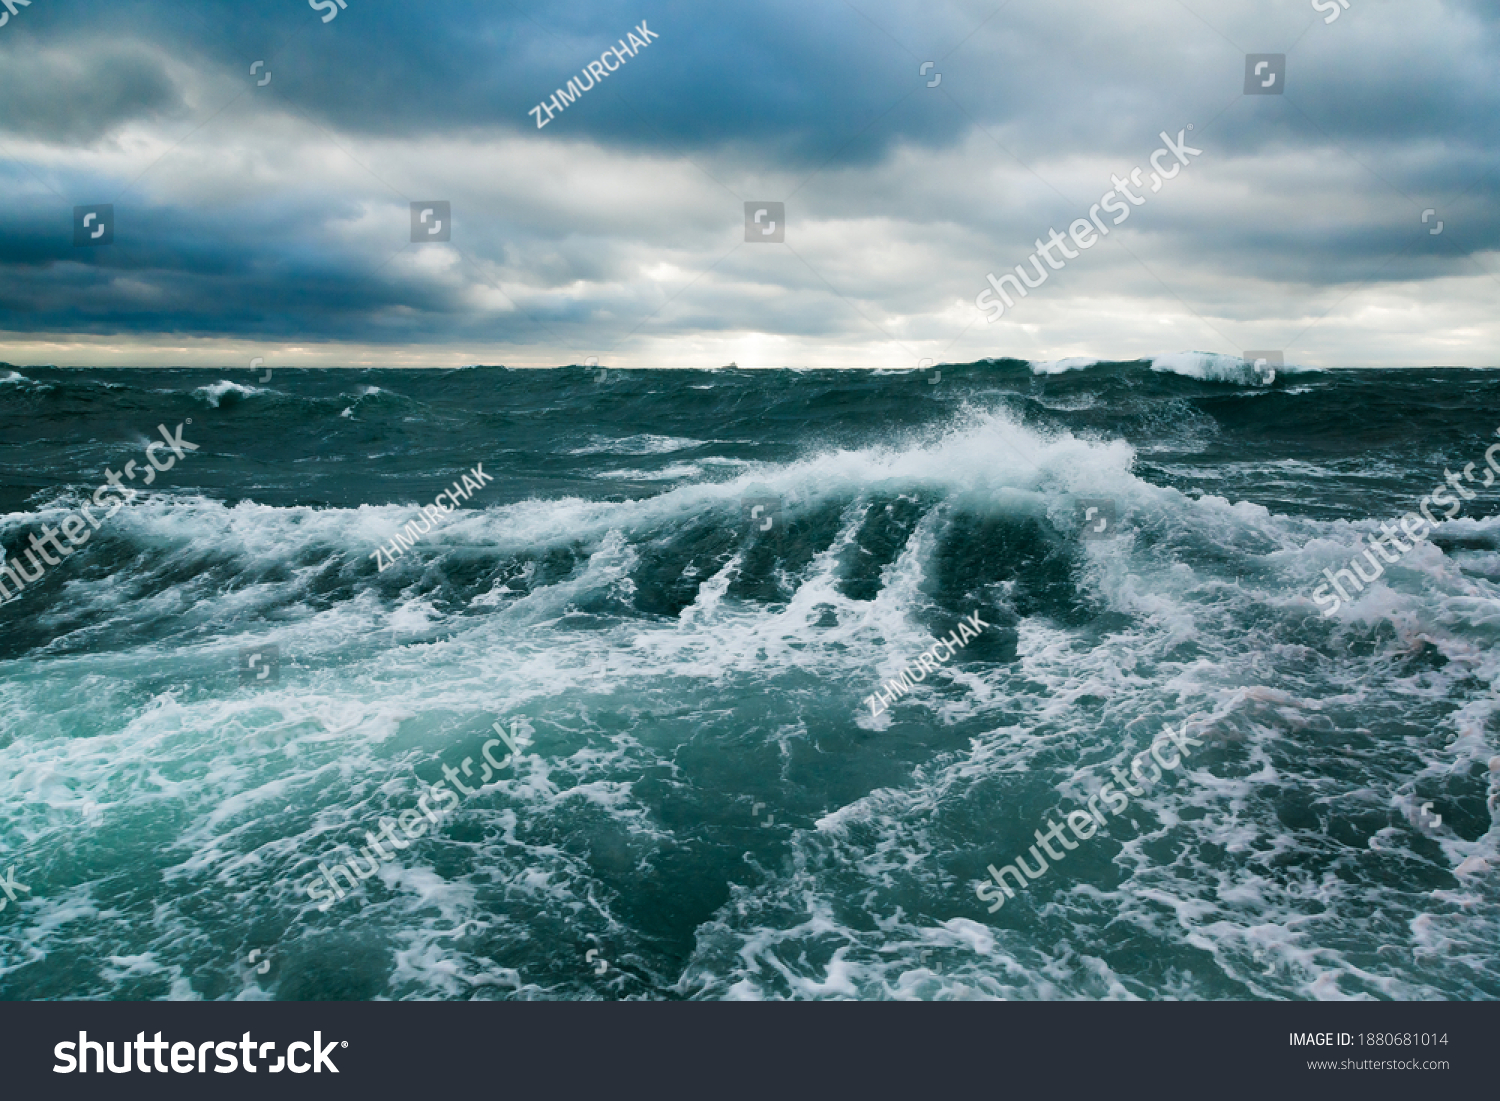 Ocean storm. Storm waves in the open ocean. Not a calm open sea. #1880681014